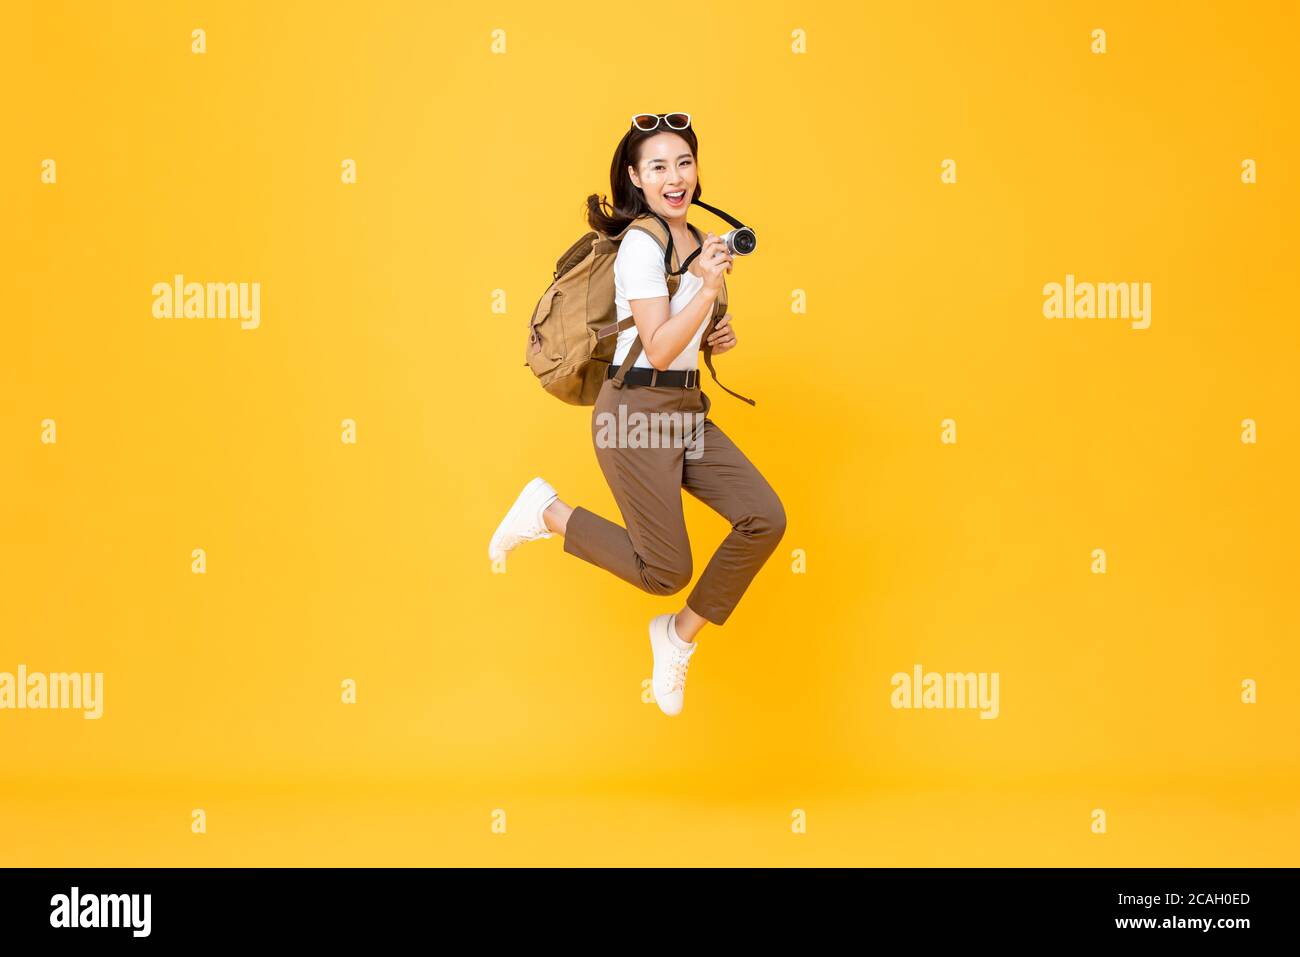 Junge hübsche asiatische Frau Tourist Backpacker lächelnd und springen mit Kamera in der Hand isoliert auf gelbem Hintergrund Stockfoto